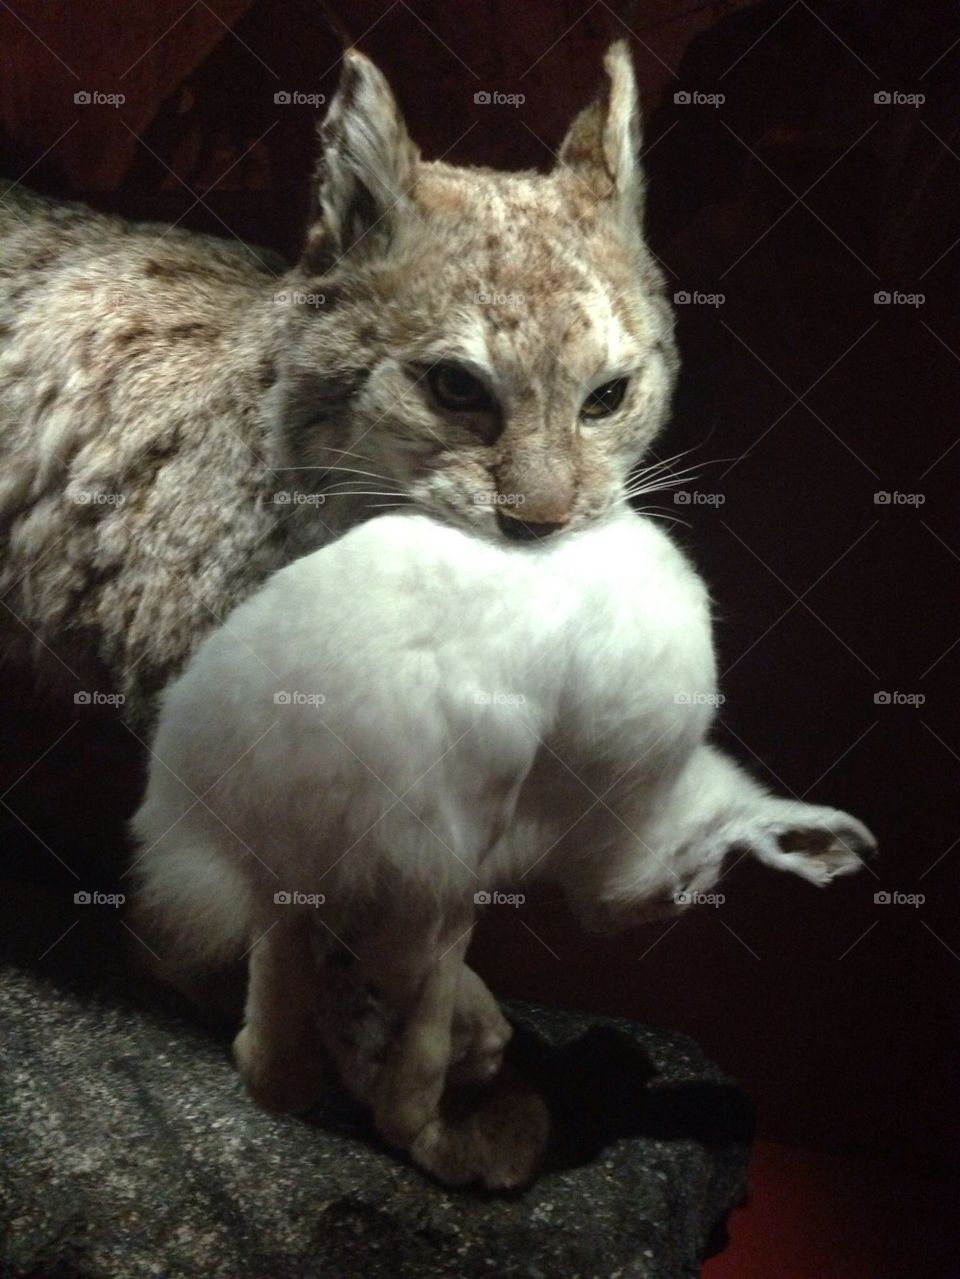 Lynx captured a rabbit